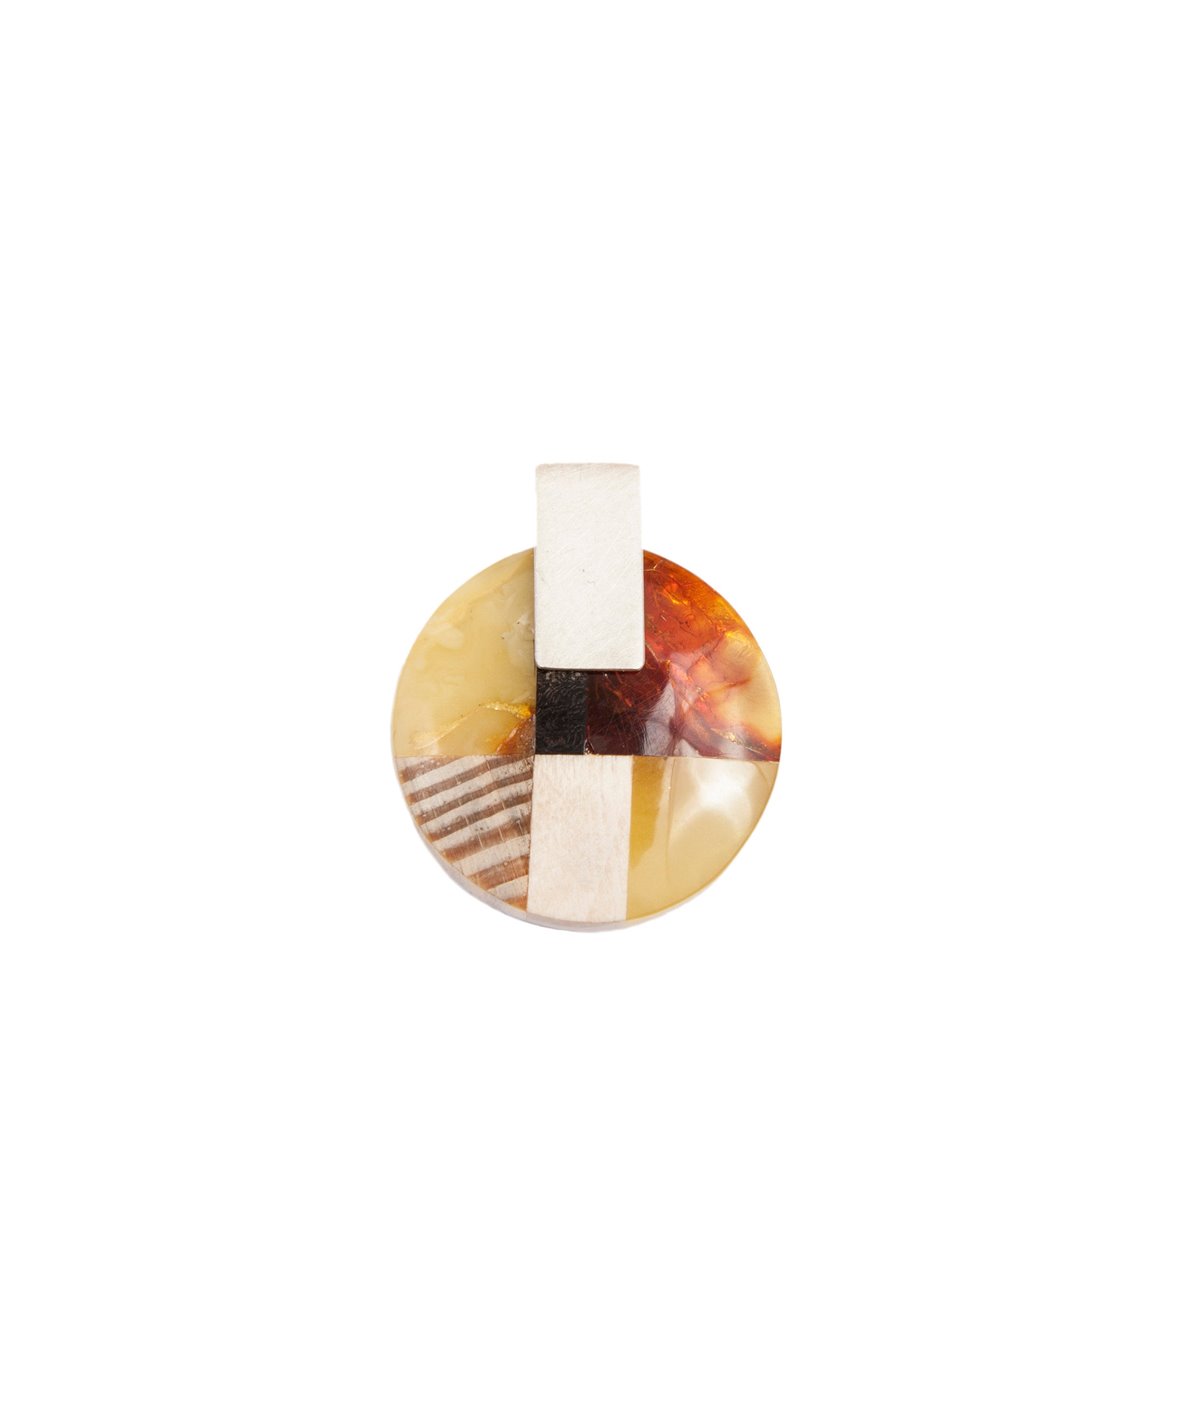 MOSAIC S Collier baltischer Bernstein + Holz + Silber, orange grau, von Marta Wlodarska Amberwood